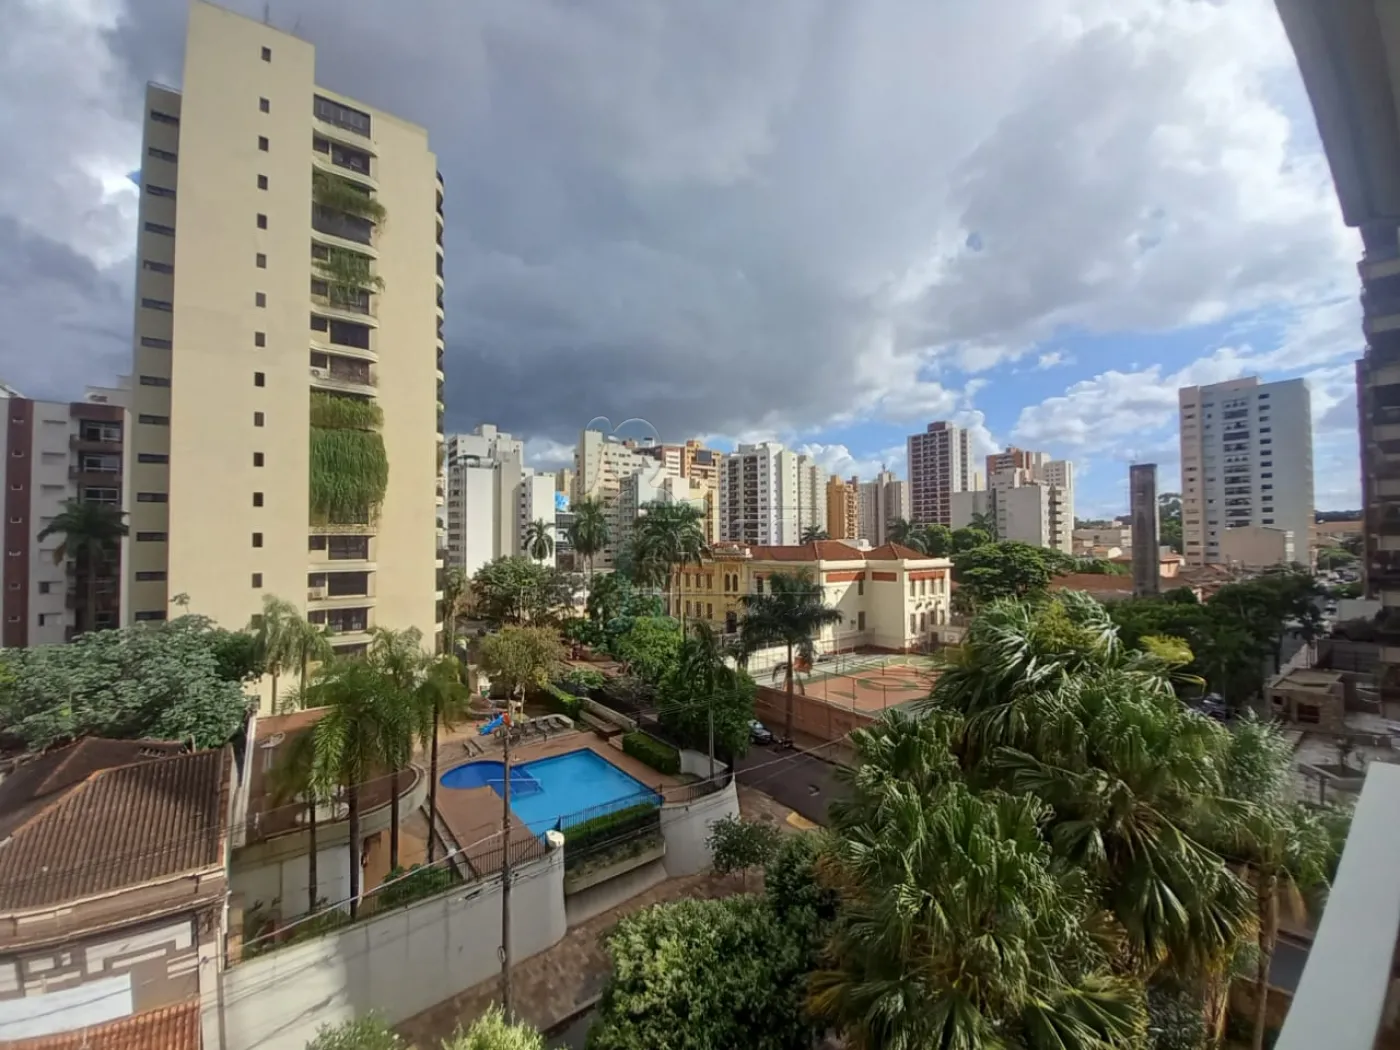 Alugar Apartamentos / Padrão em Ribeirão Preto R$ 2.700,00 - Foto 3